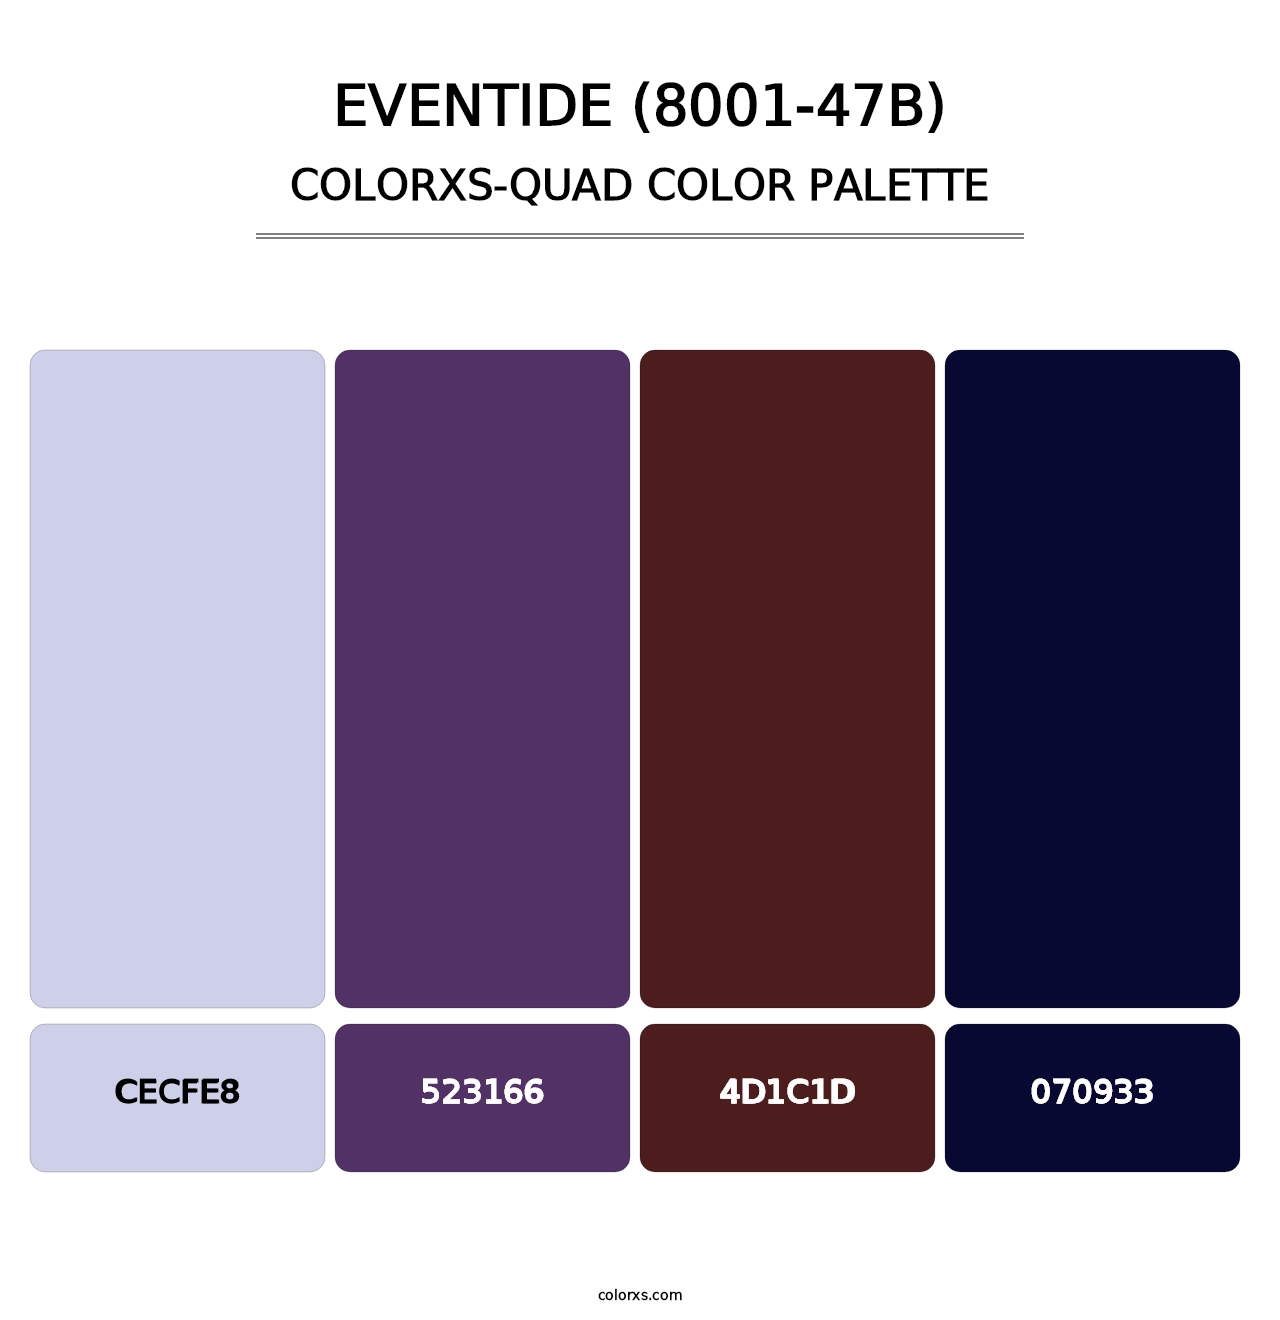 Eventide (8001-47B) - Colorxs Quad Palette